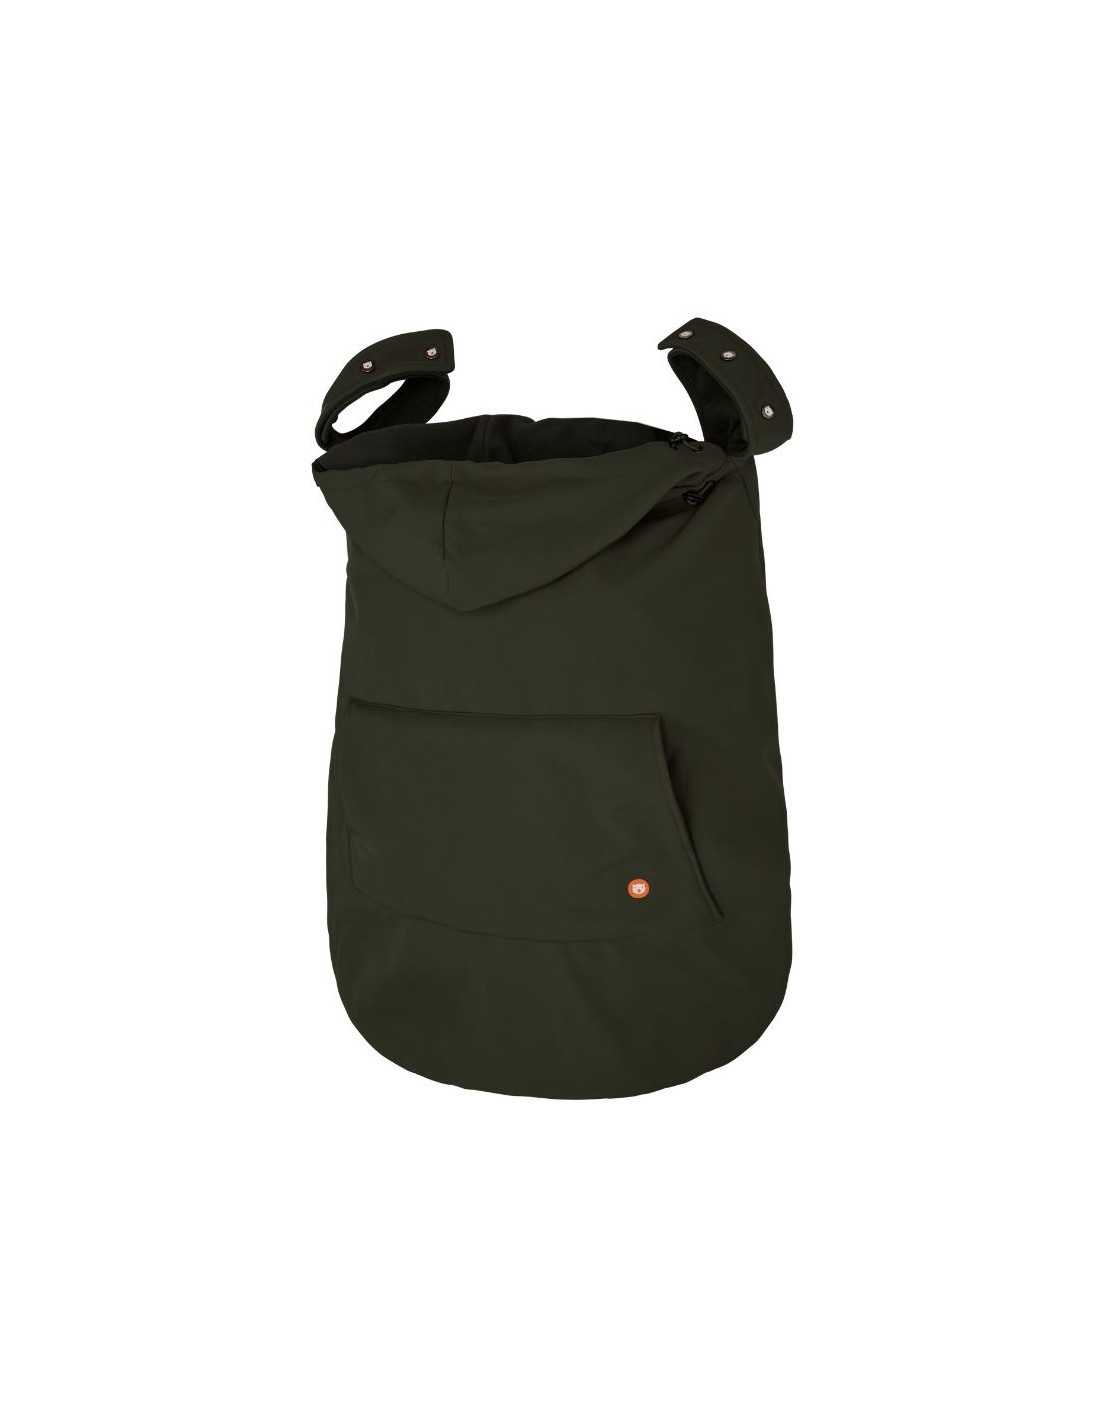 https://www.quokkababy.es/50492-thickbox_default/cobertor-de-porteo-wombat-shell-verde.jpg